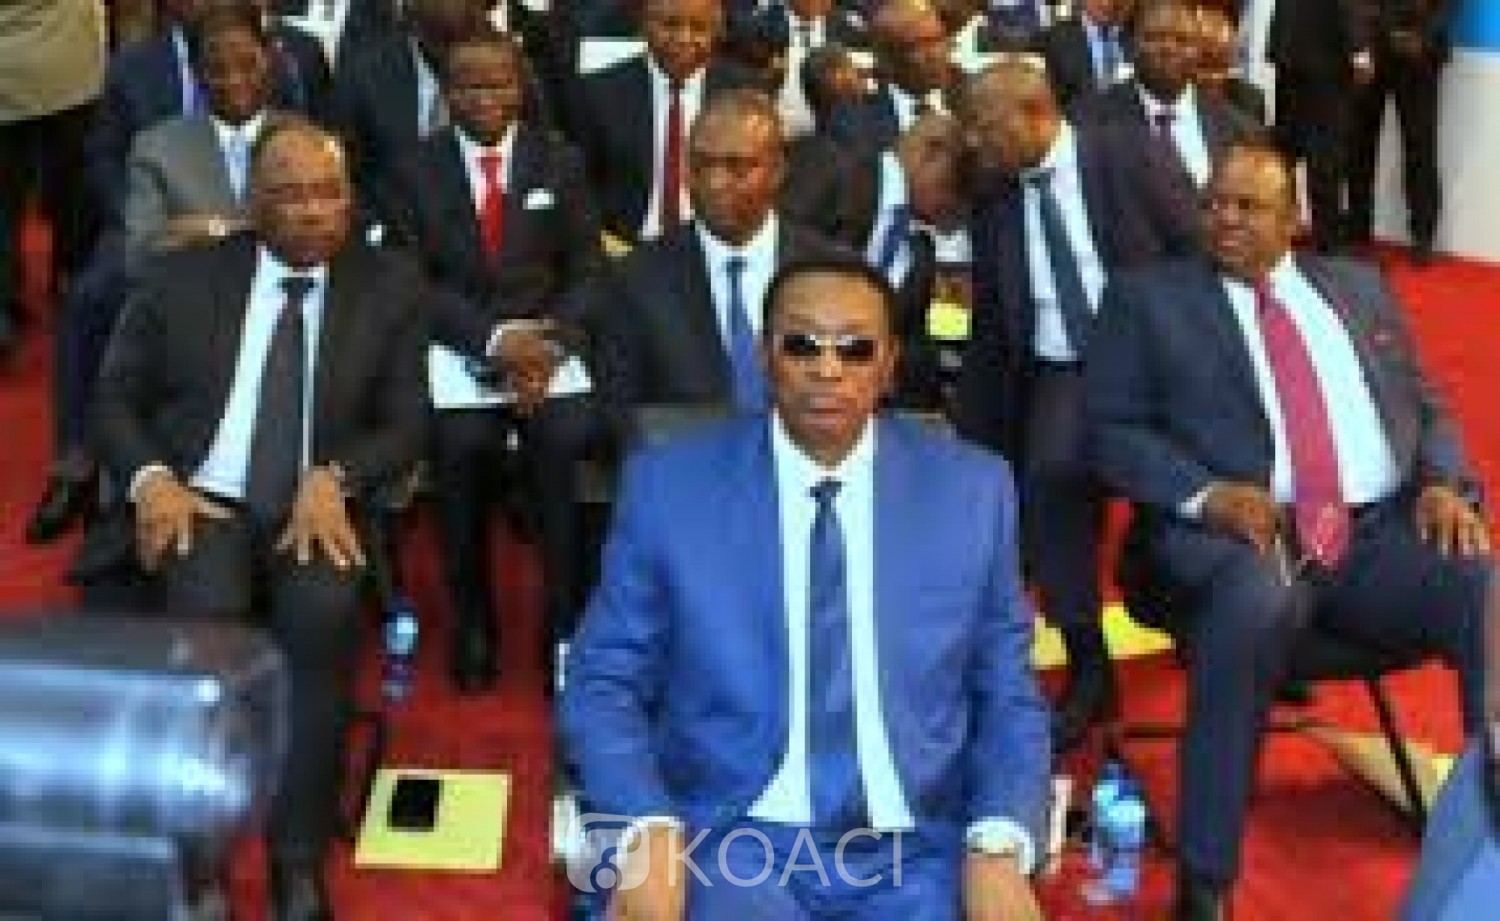 RDC: Investiture du gouvernement de coalition Tshisekedi-Kabila  en l'absence  de l'opposition